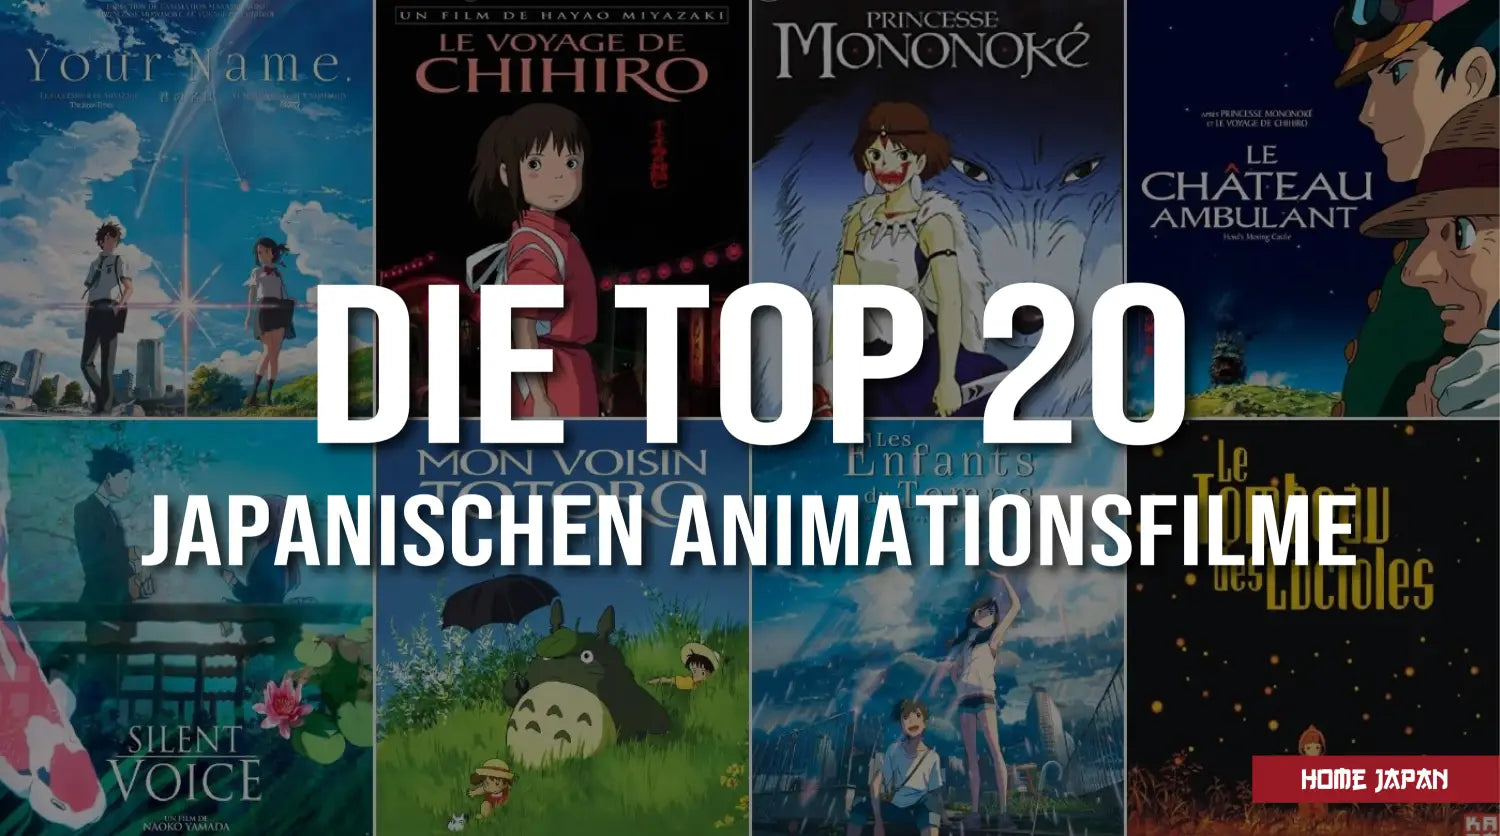 Top 20 der besten japanischen Manga Animationsfilme in der Geschichte, die man gesehen haben muss